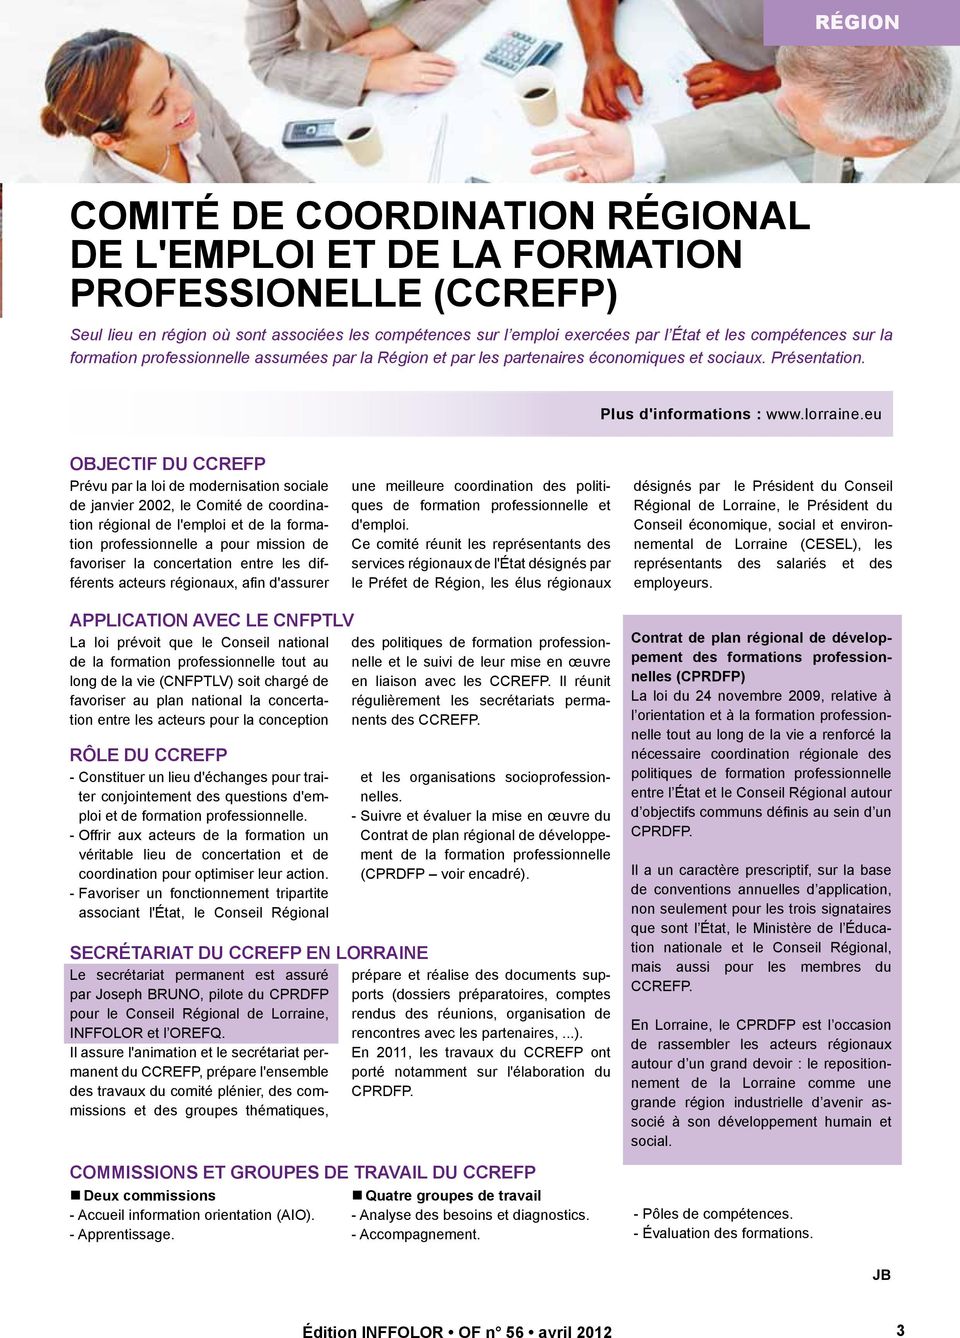 eu objectif du ccrefp Prévu par la loi de modernisation sociale de janvier 2002, le Comité de coordination régional de l'emploi et de la formation professionnelle a pour mission de favoriser la